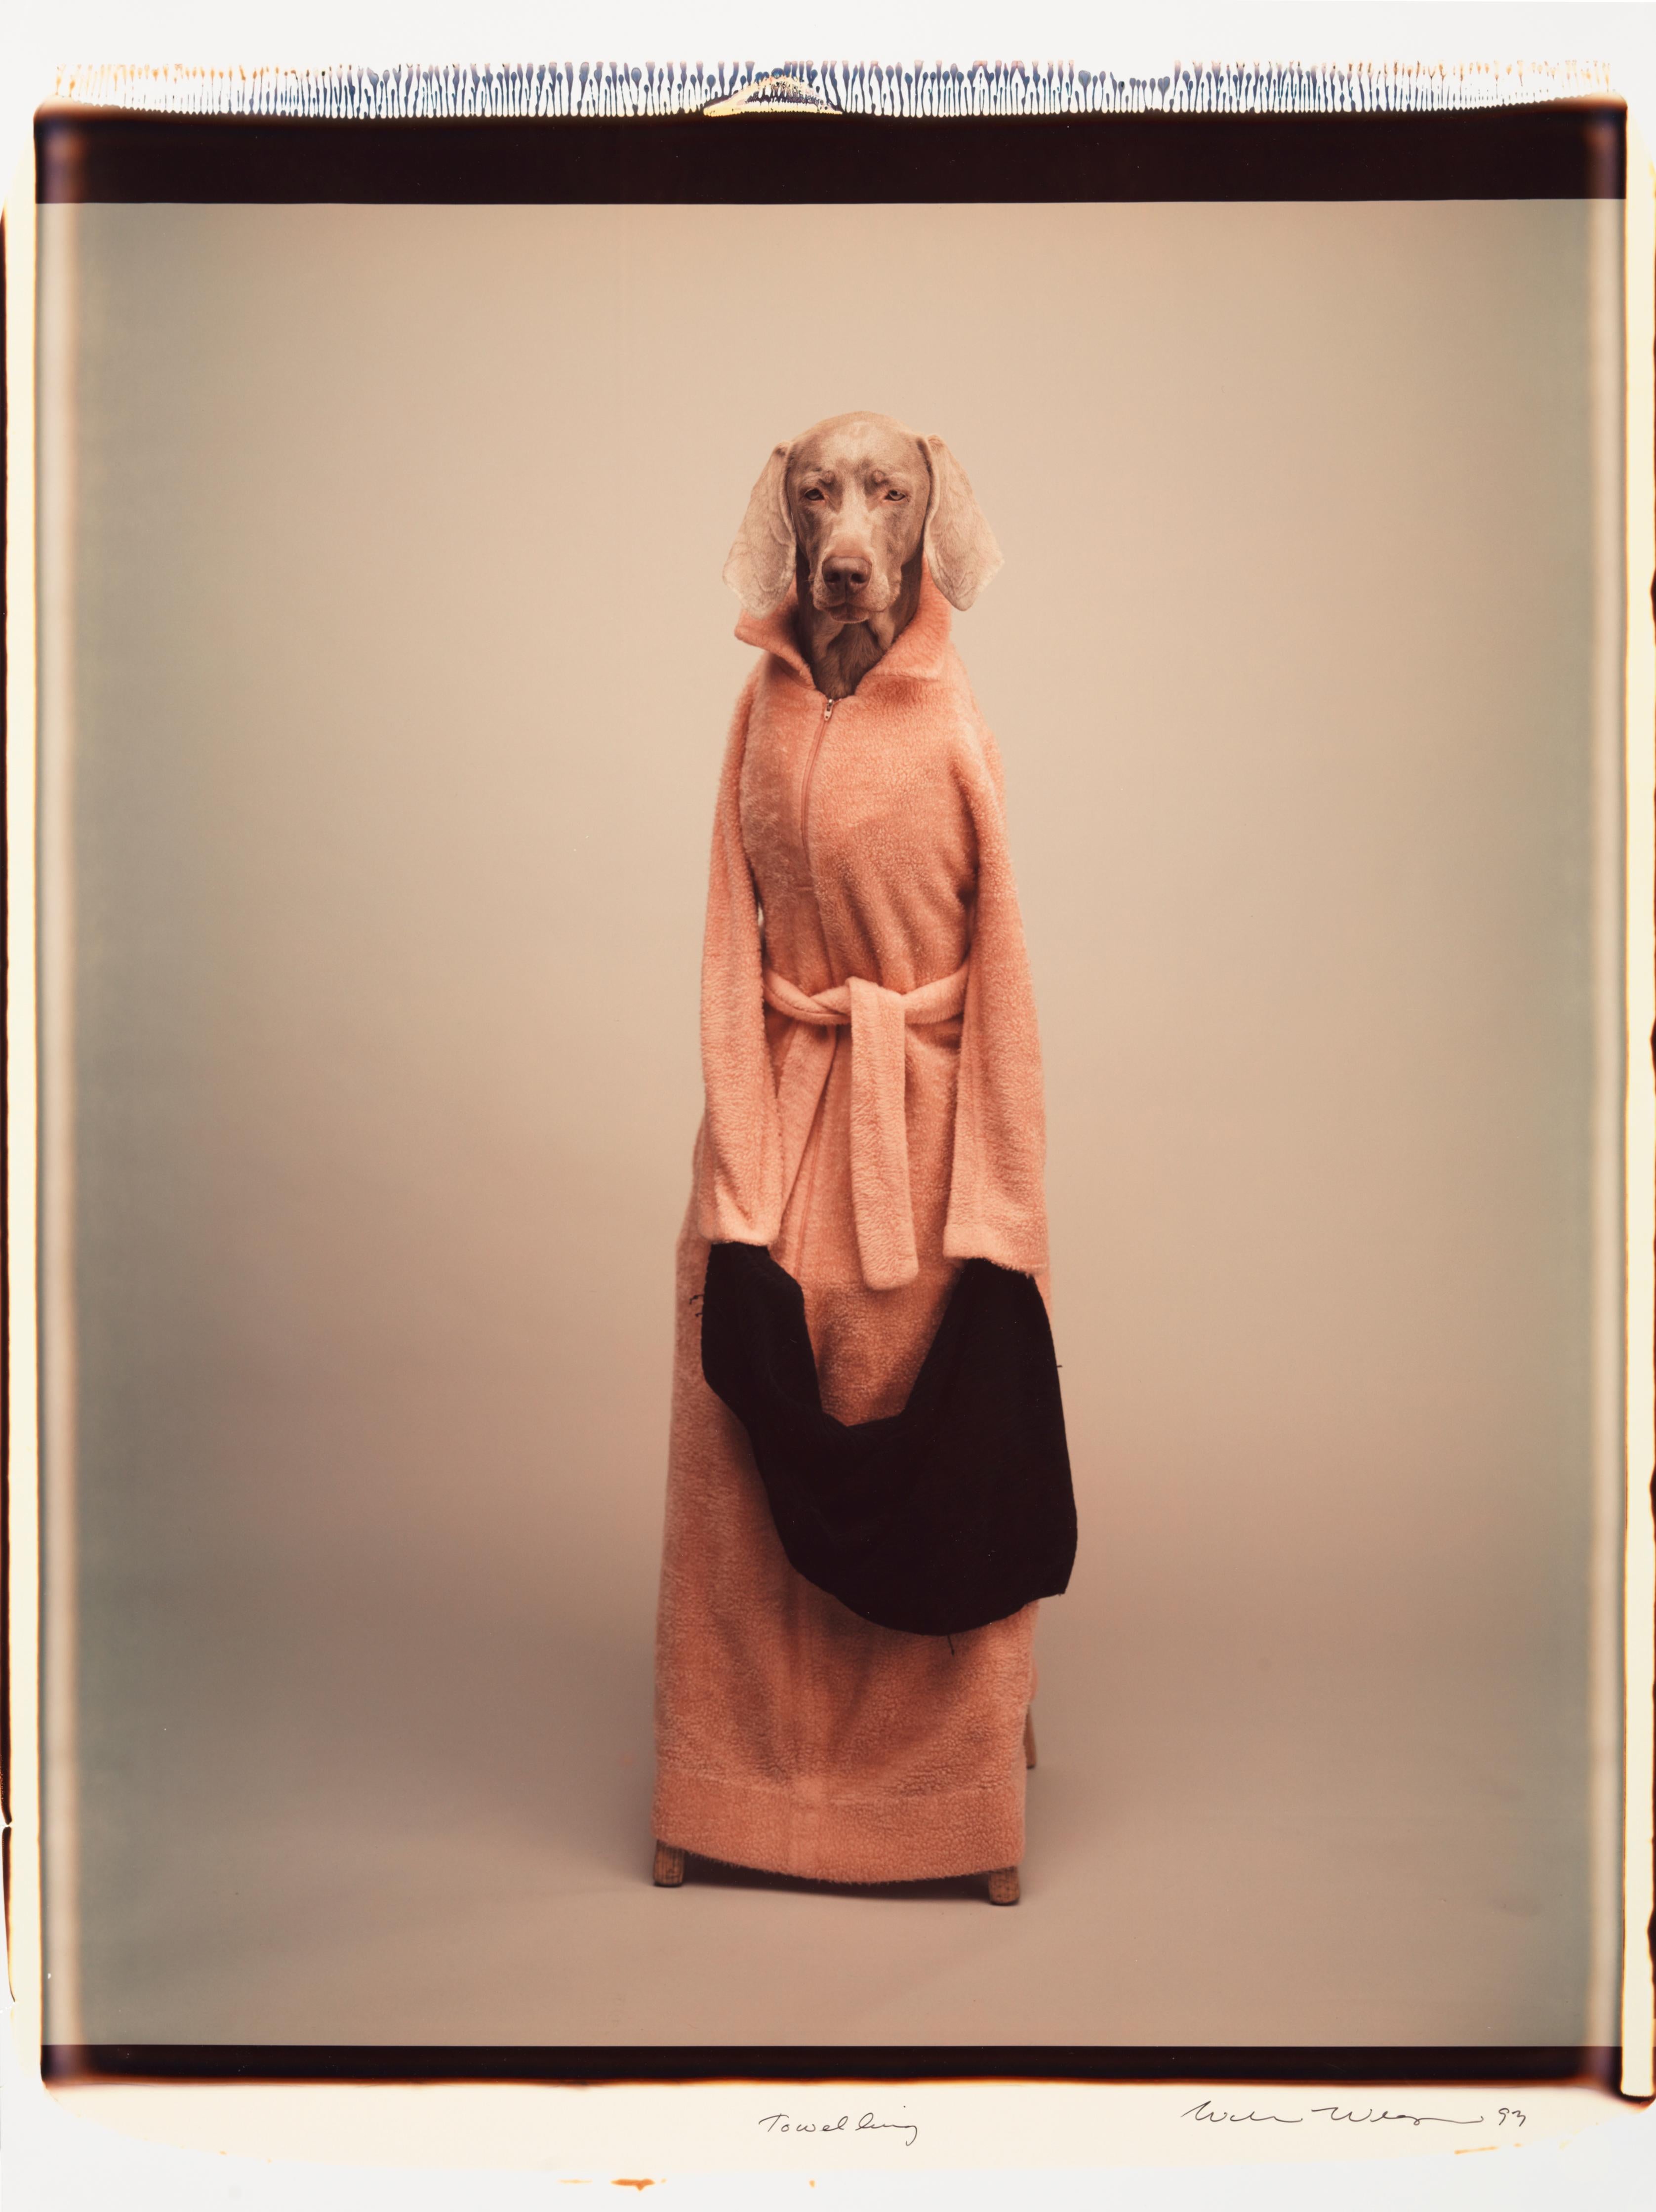 Handtuch - William Wegman (Farbfotografie)
Signiert und beschriftet mit Titel
Einzigartiger Farb-Polaroid-Druck, gedruckt 1993
24 x 20 Zoll

Die Hunde, die mit Perücken, Kostümen und Requisiten ausgestattet sind, zeigen eine breite Palette